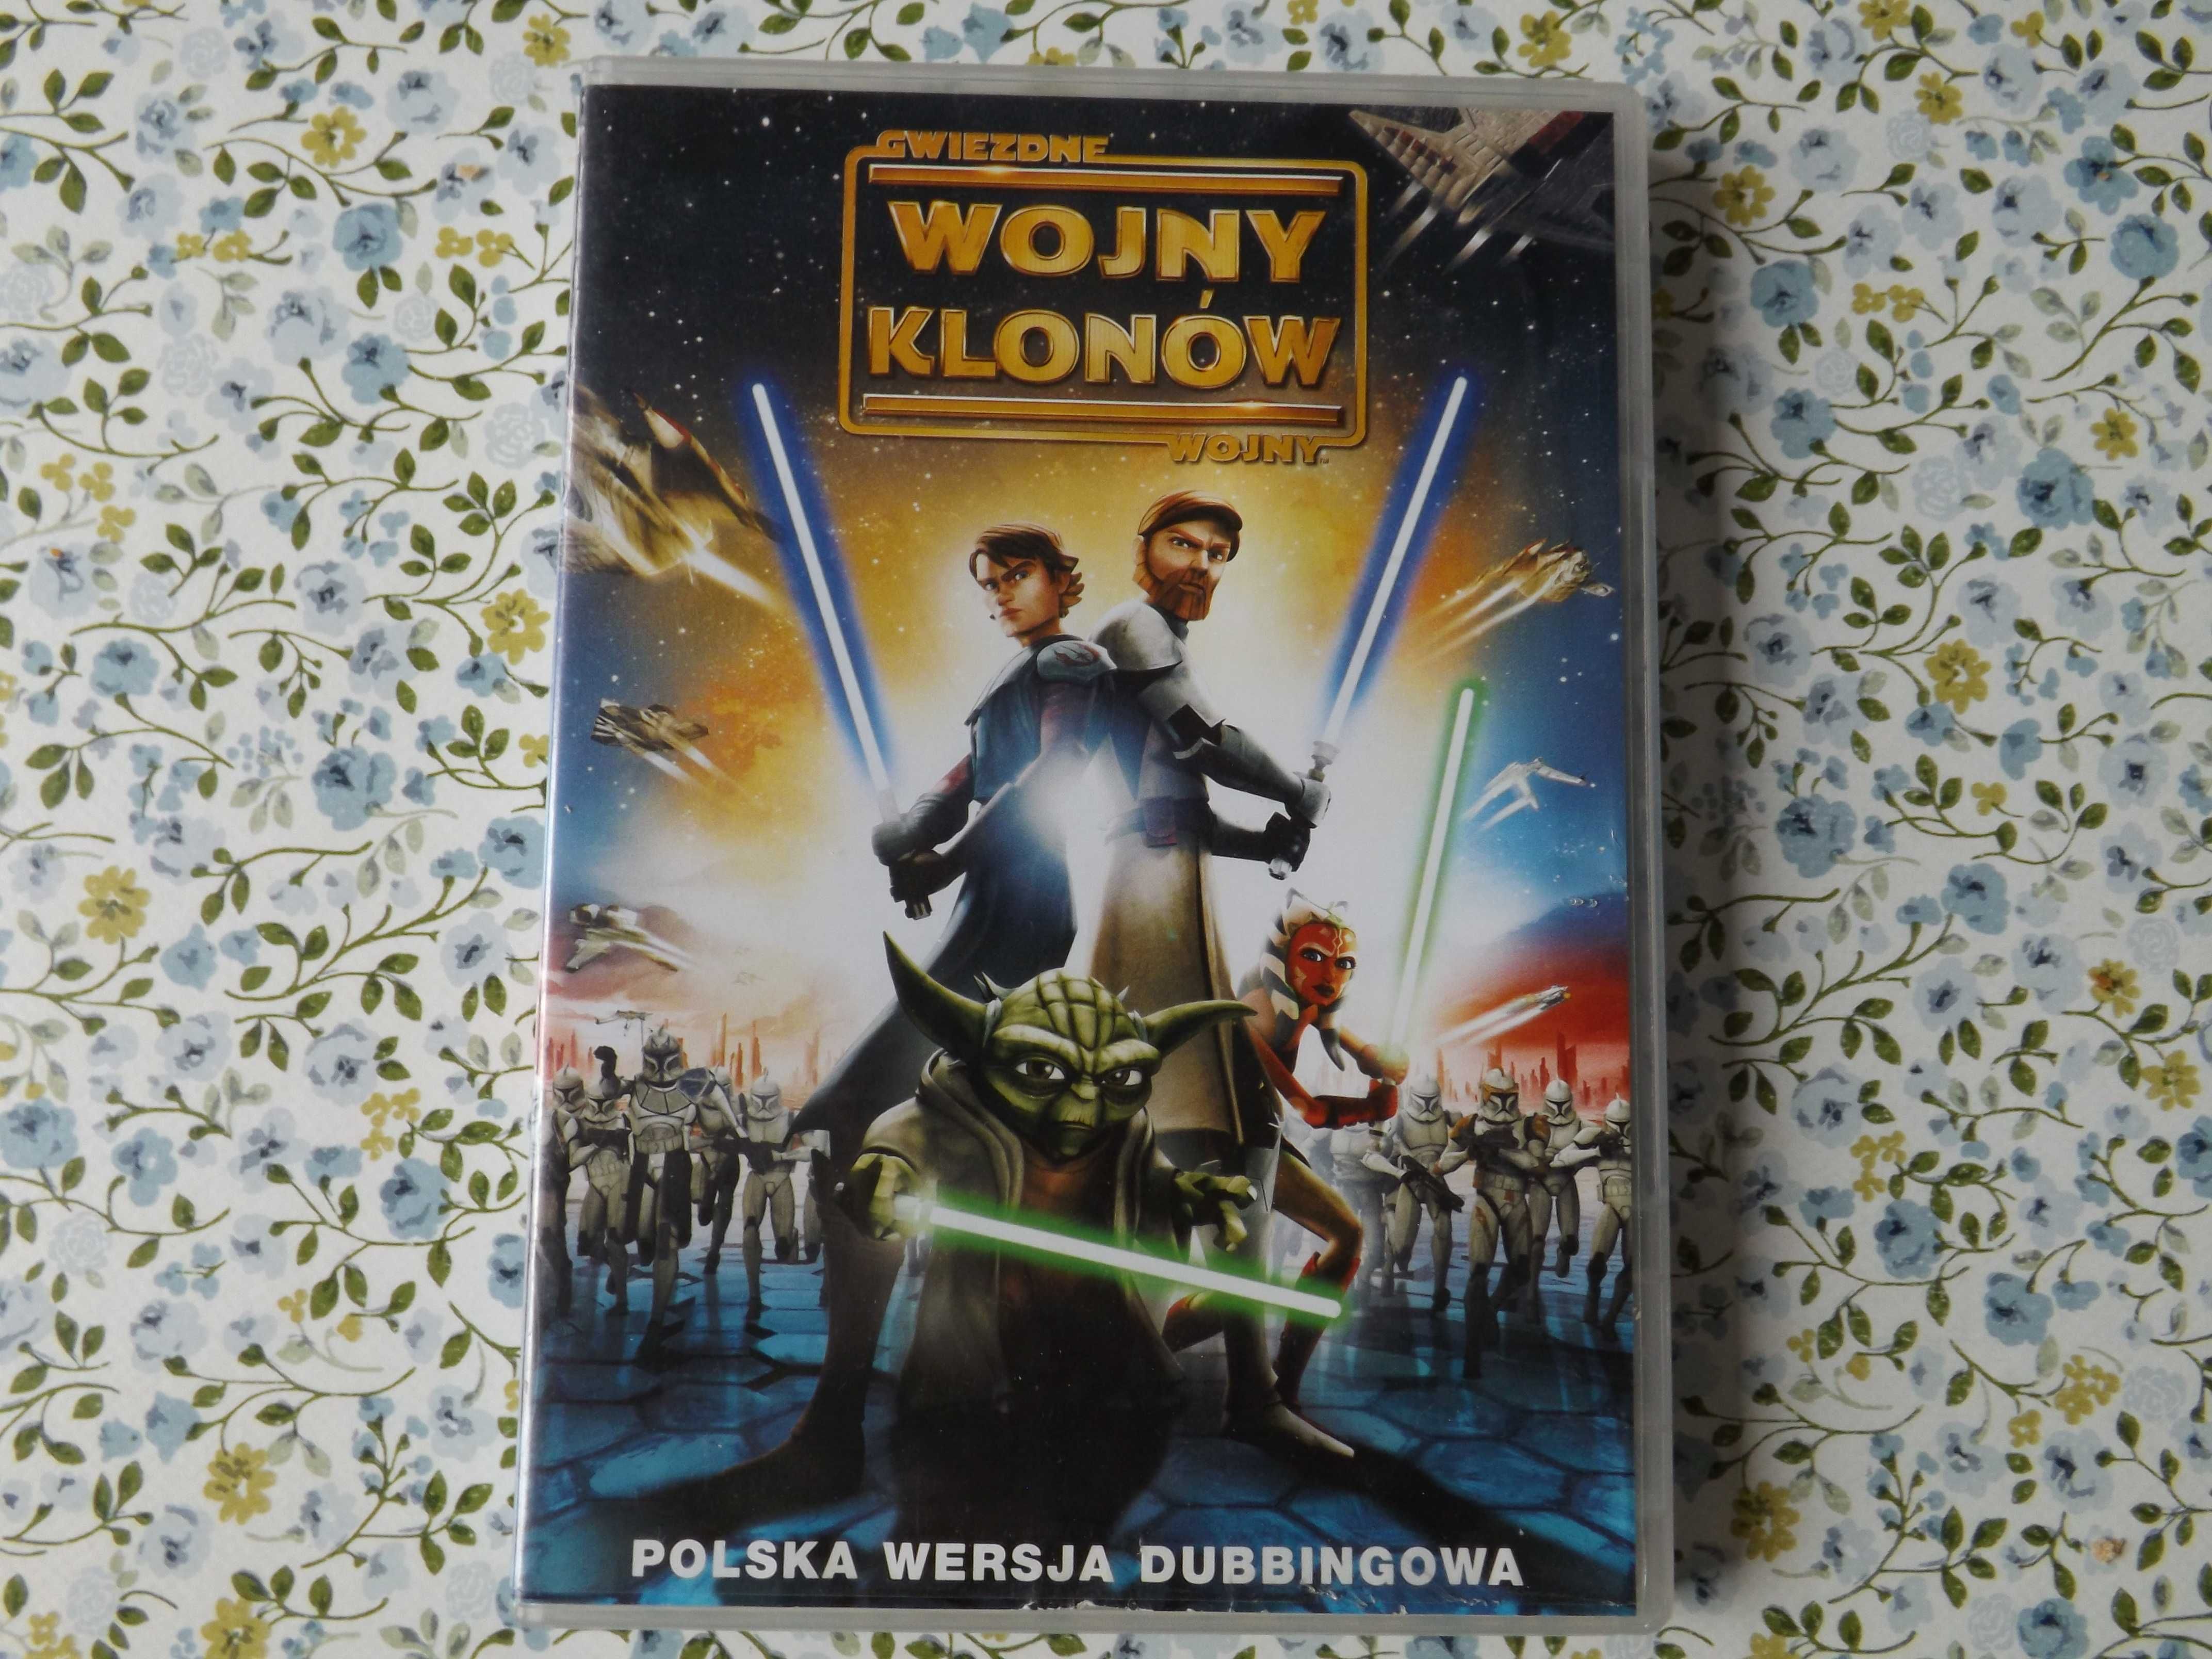 Gwiezdne Wojny Klonów film polski, bajka Star Wars unikat